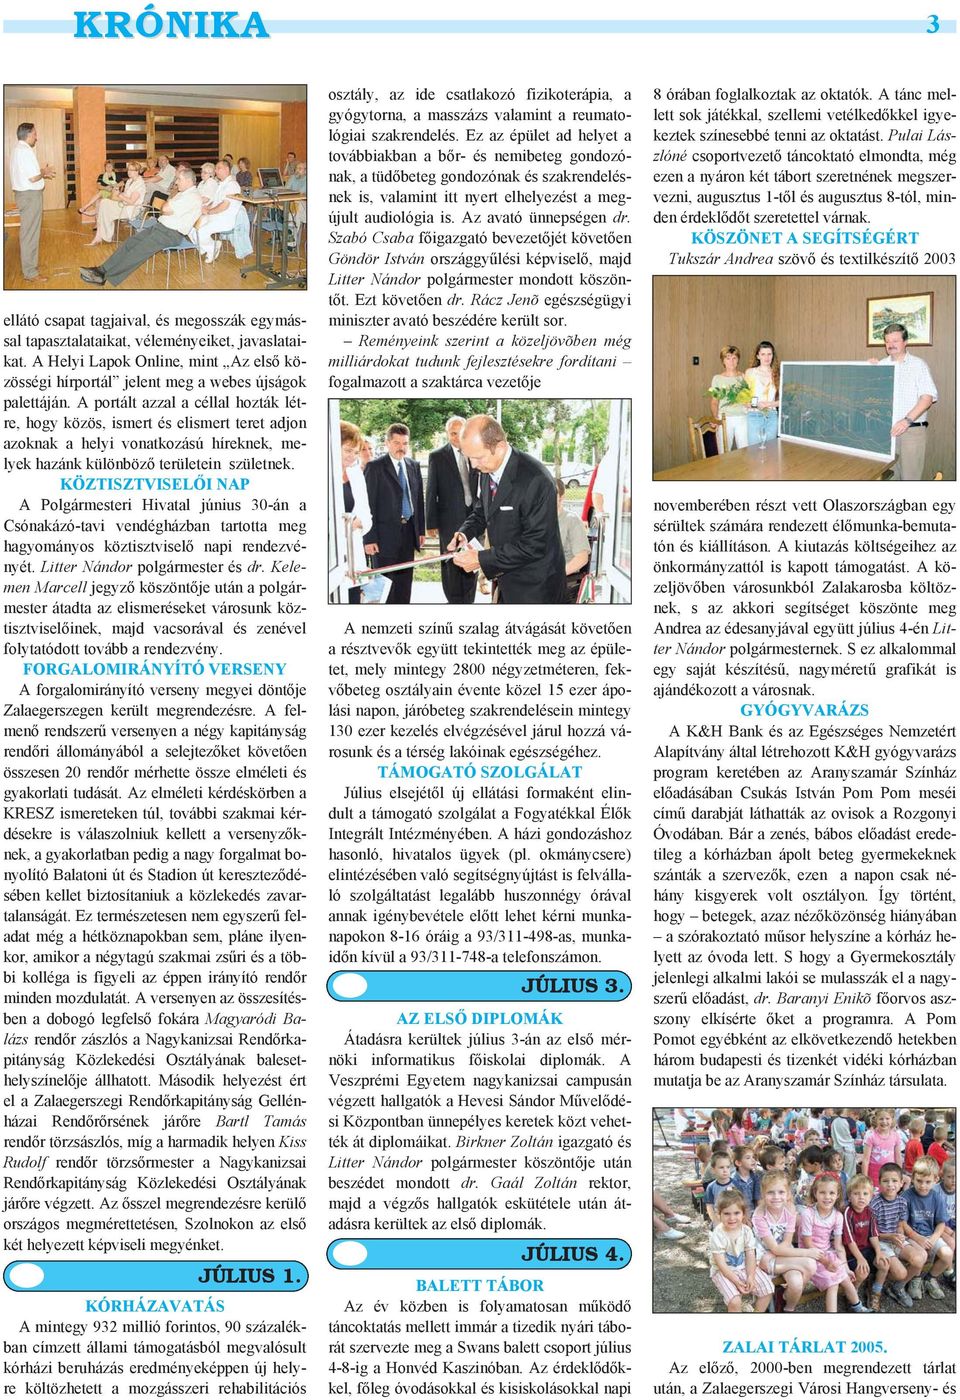 KÖZTISZTVISELŐI NAP A Polgármesteri Hivatal június 30-án a Csónakázó-tavi vendégházban tartotta meg hagyományos köztisztviselő napi rendezvényét. Litter Nándor polgármester és dr.